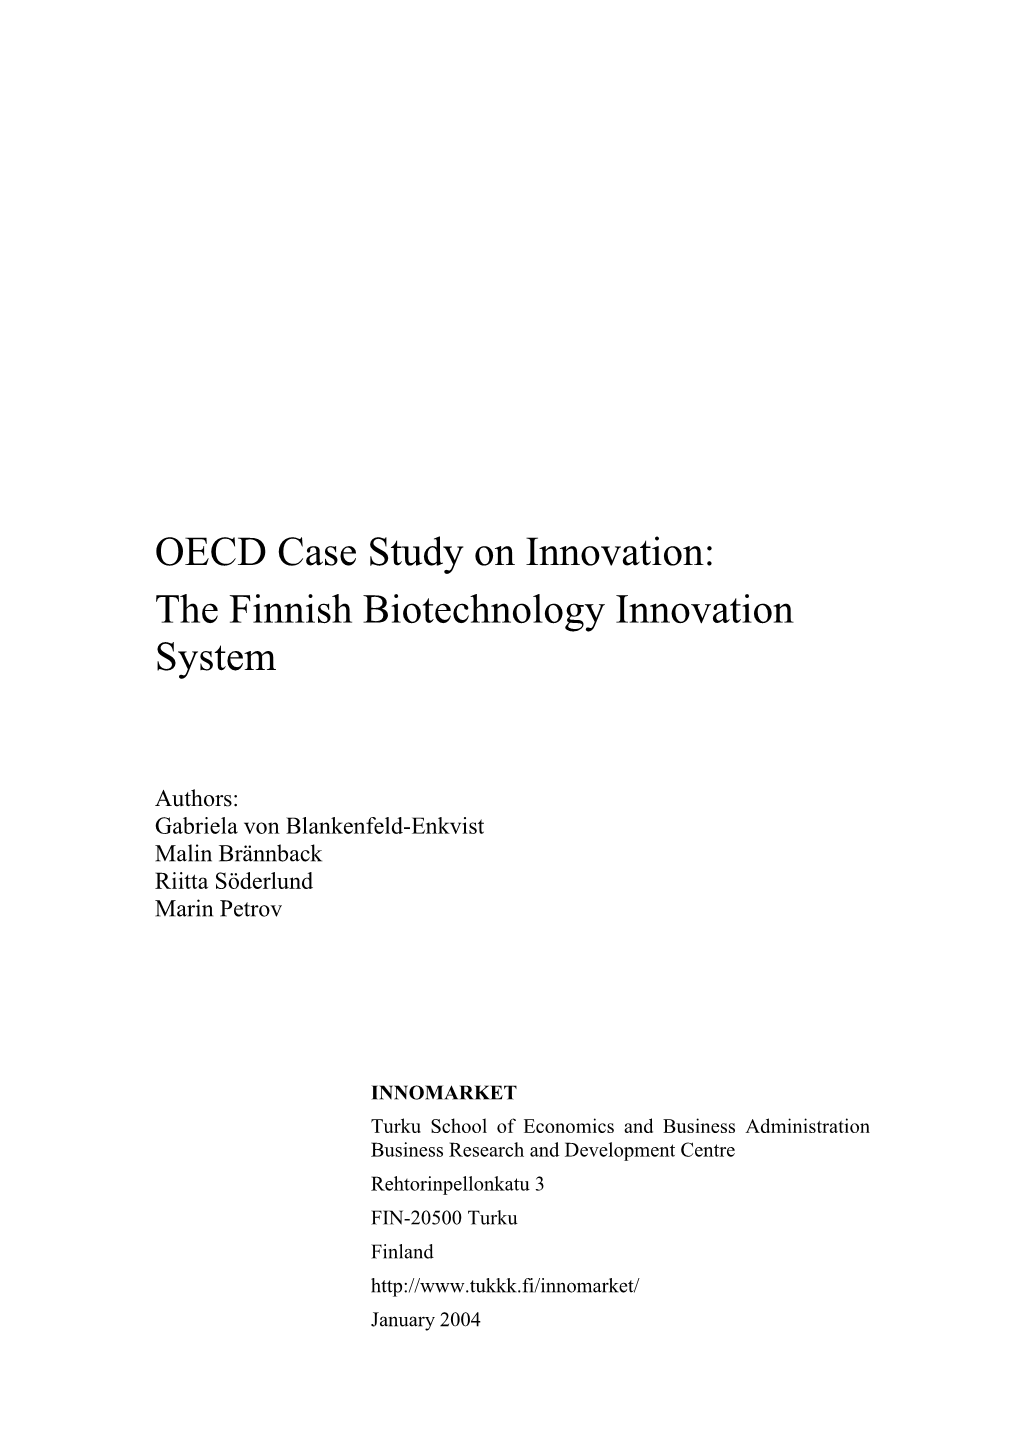 OECD Case Study on Innovation: the Finnish Biotechnology Innovation System